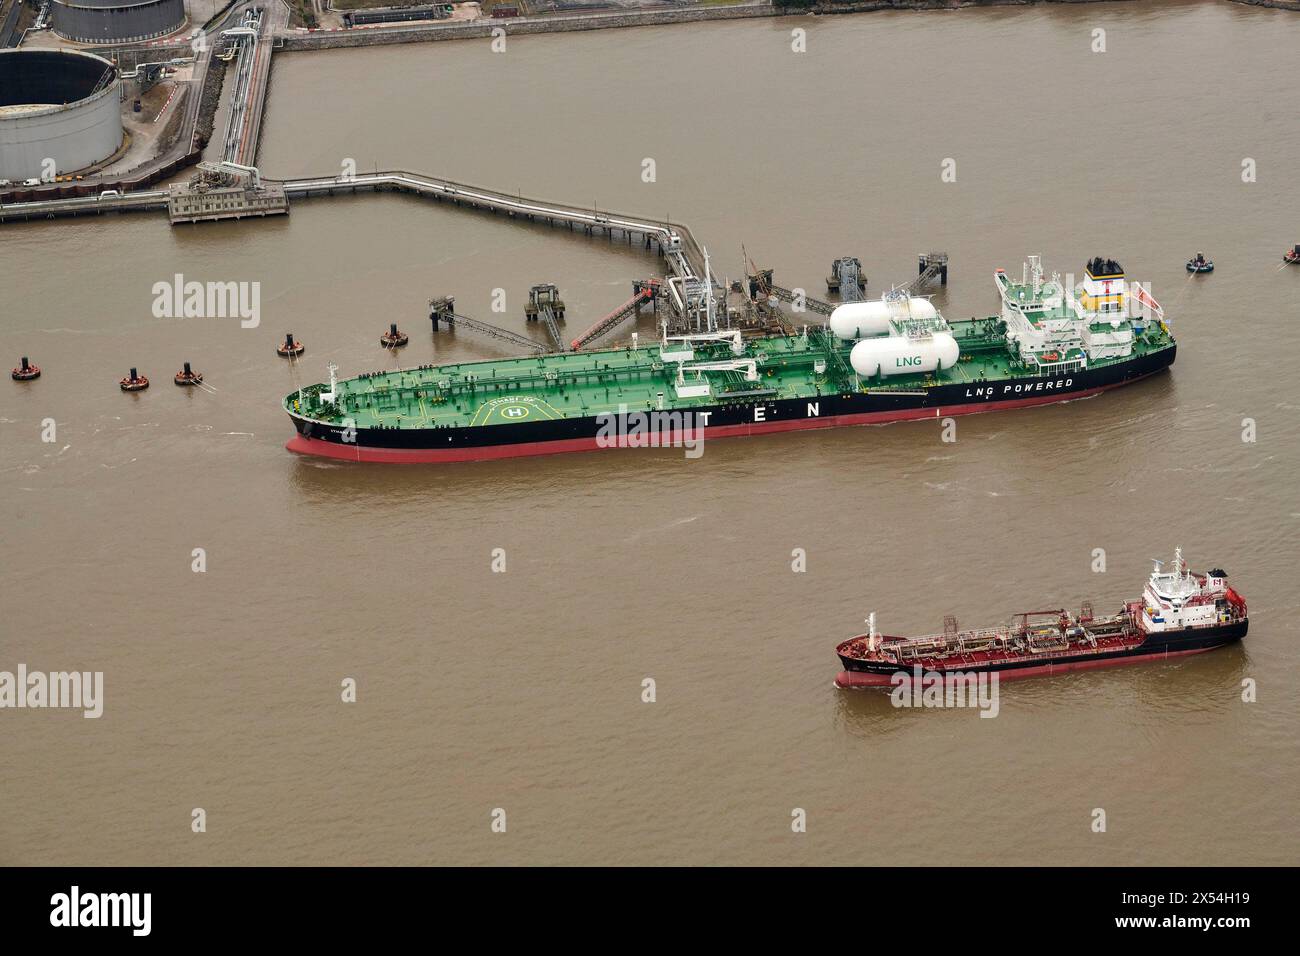 Ein LPG-Tanker, der an einem Umsteigeterminal am Ufer von Mersey, Liverpool Area, Merseyside, Nordwesten Englands, Großbritannien, entlädt Stockfoto